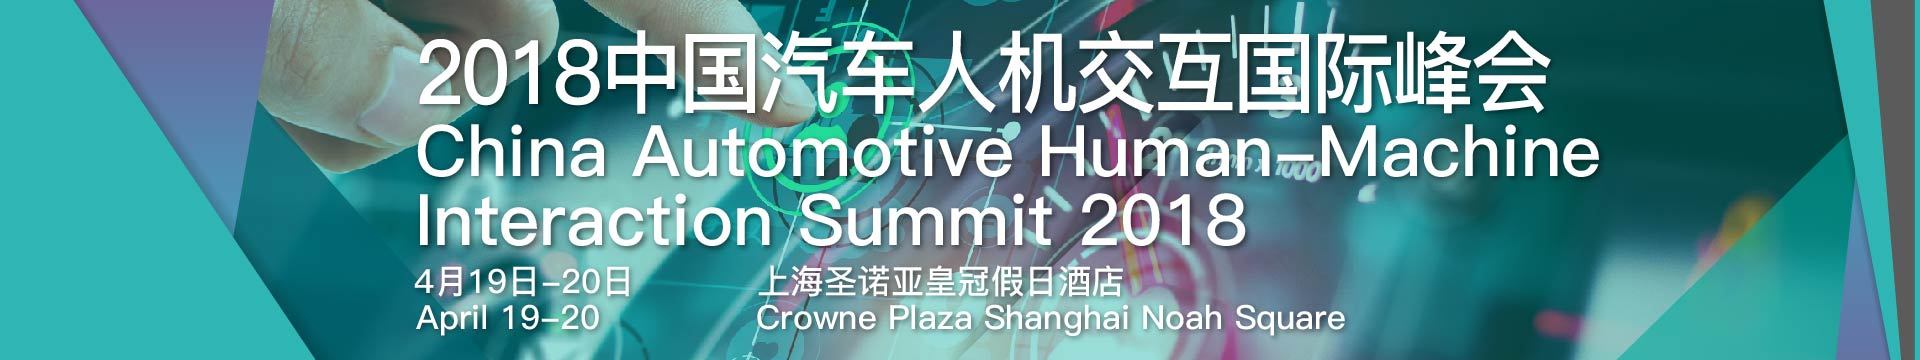 2018中国汽车人机交互国际峰会